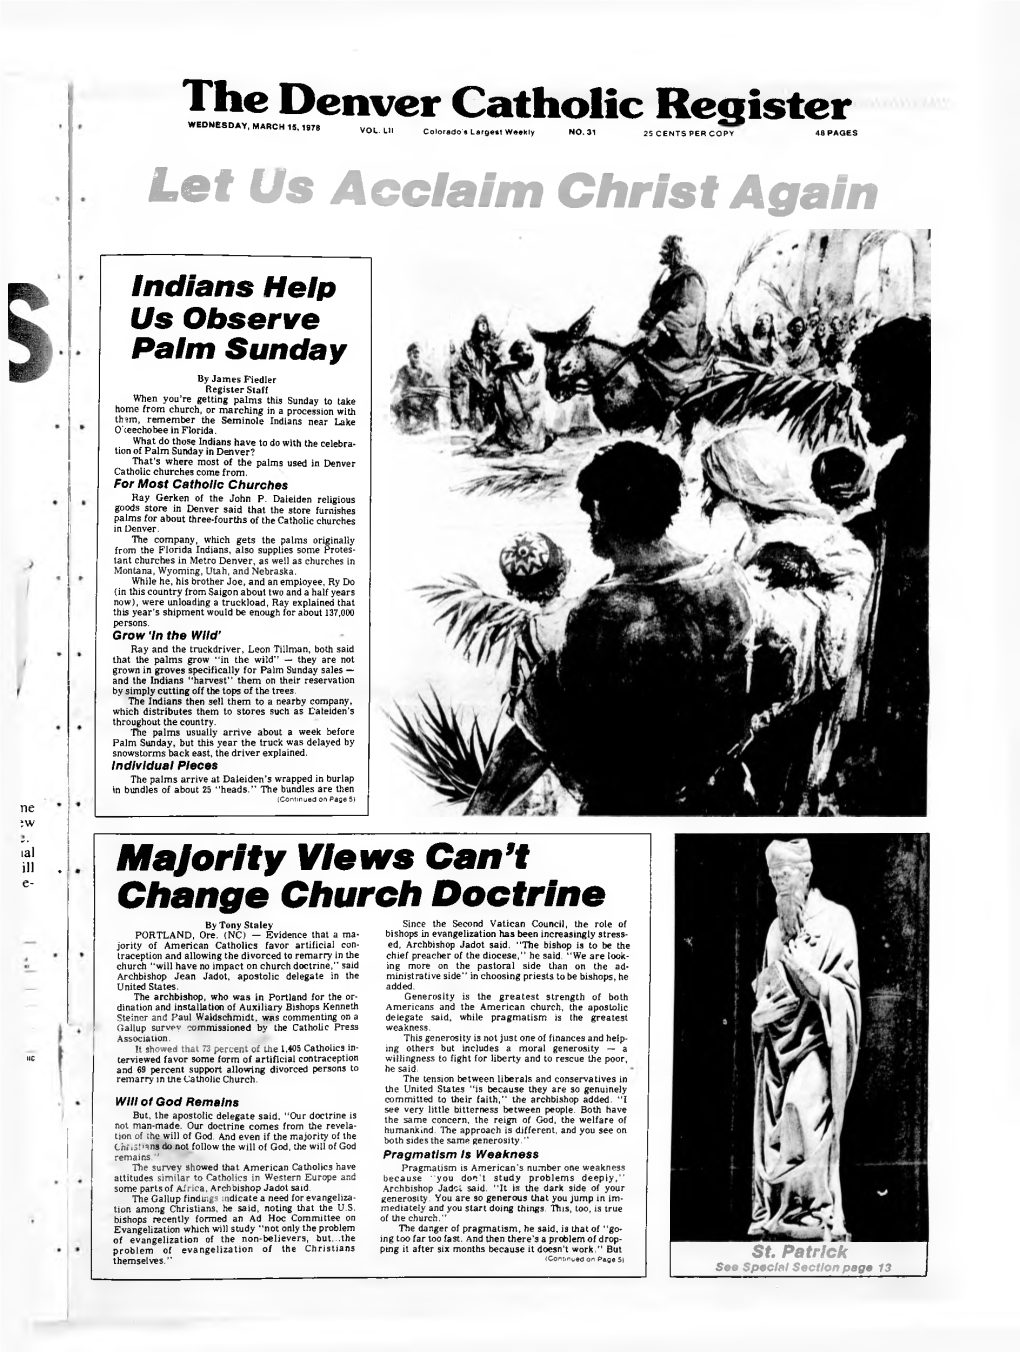 The Denver Catholic Register WEDNESDAY, MARCH 15,1978 - VOL